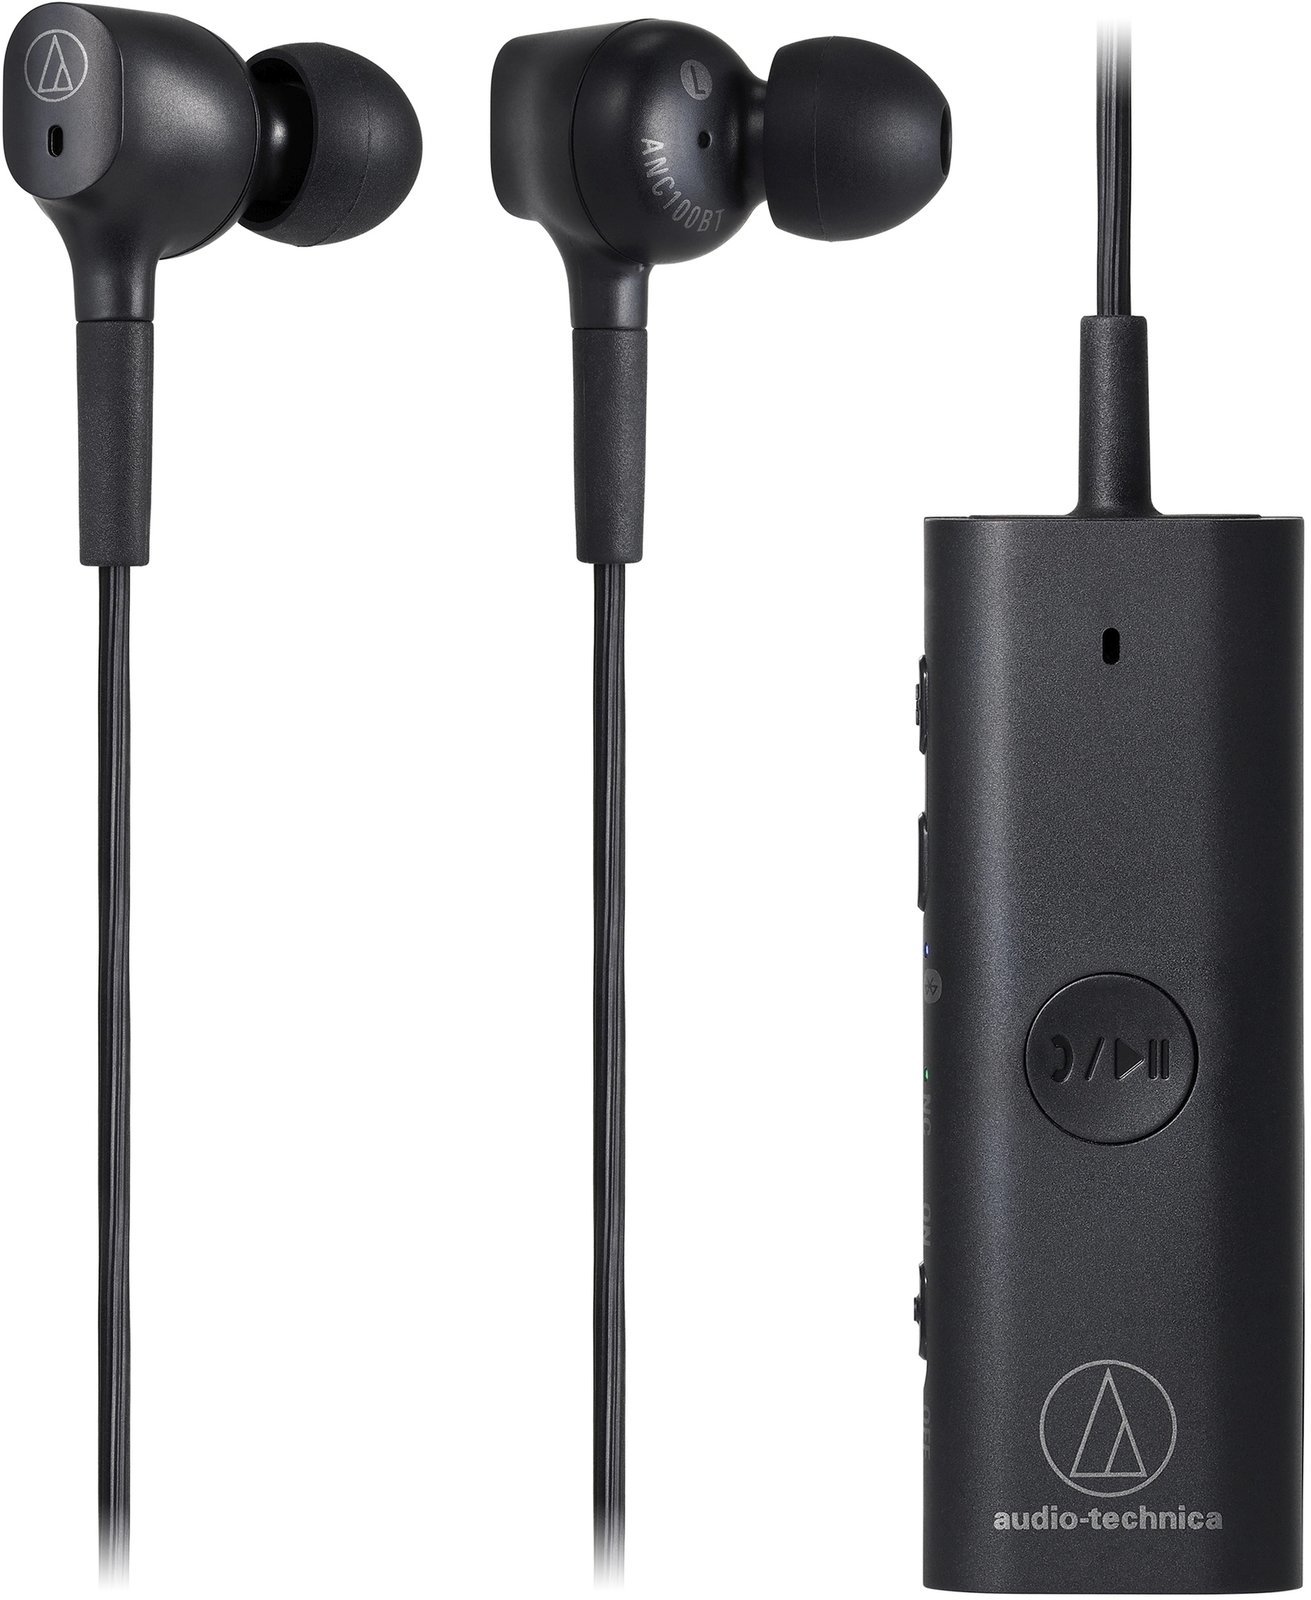 Drahtlose In-Ear-Kopfhörer Audio-Technica ATH-ANC100BT Schwarz